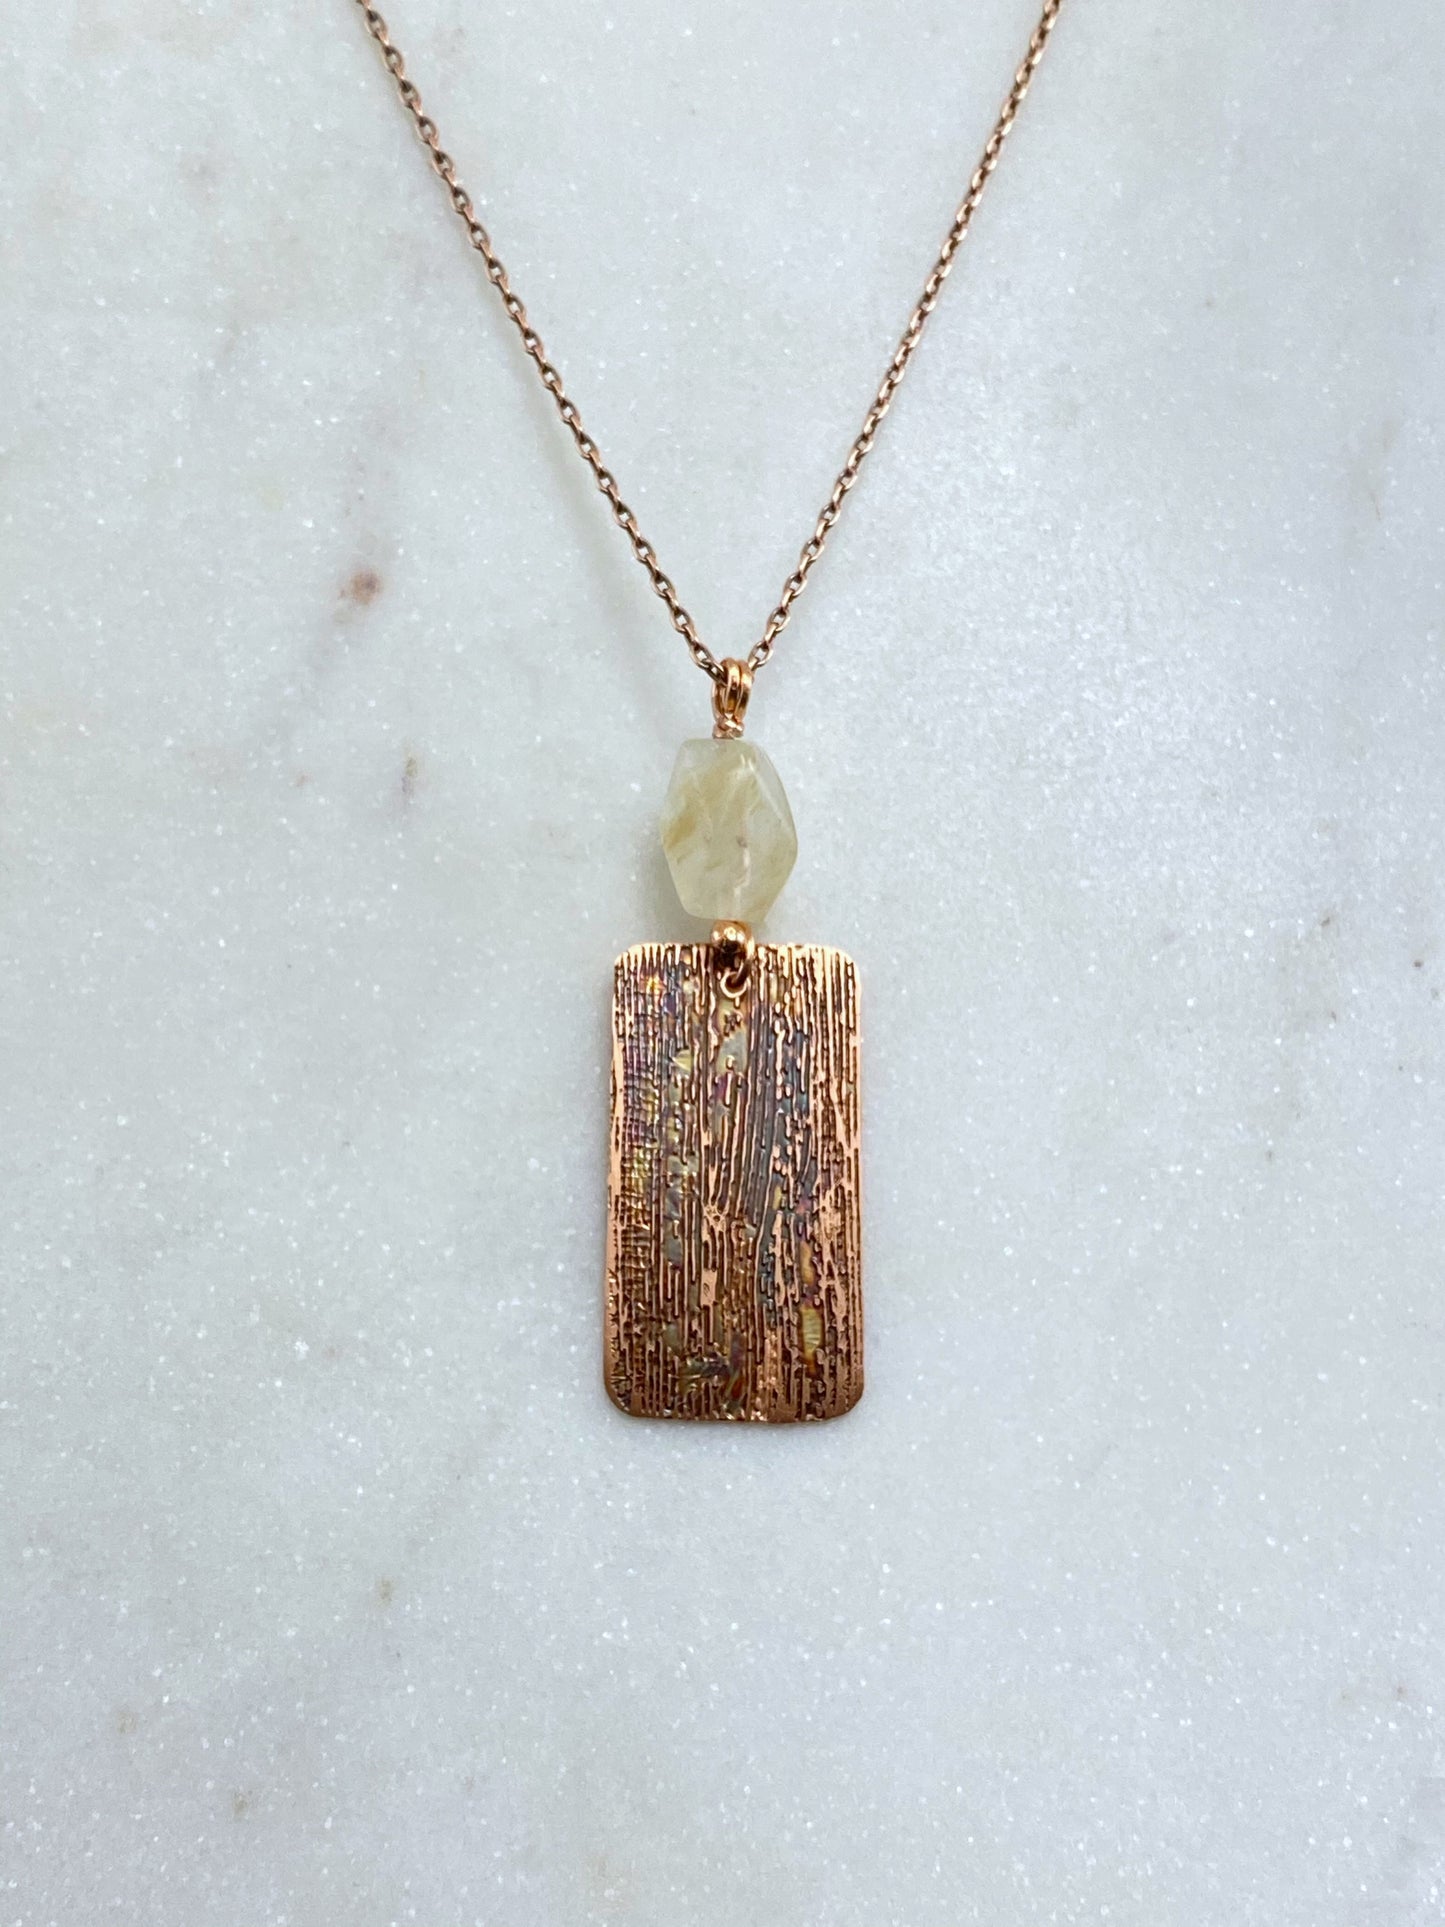 Acid etched copper necklace with quartz